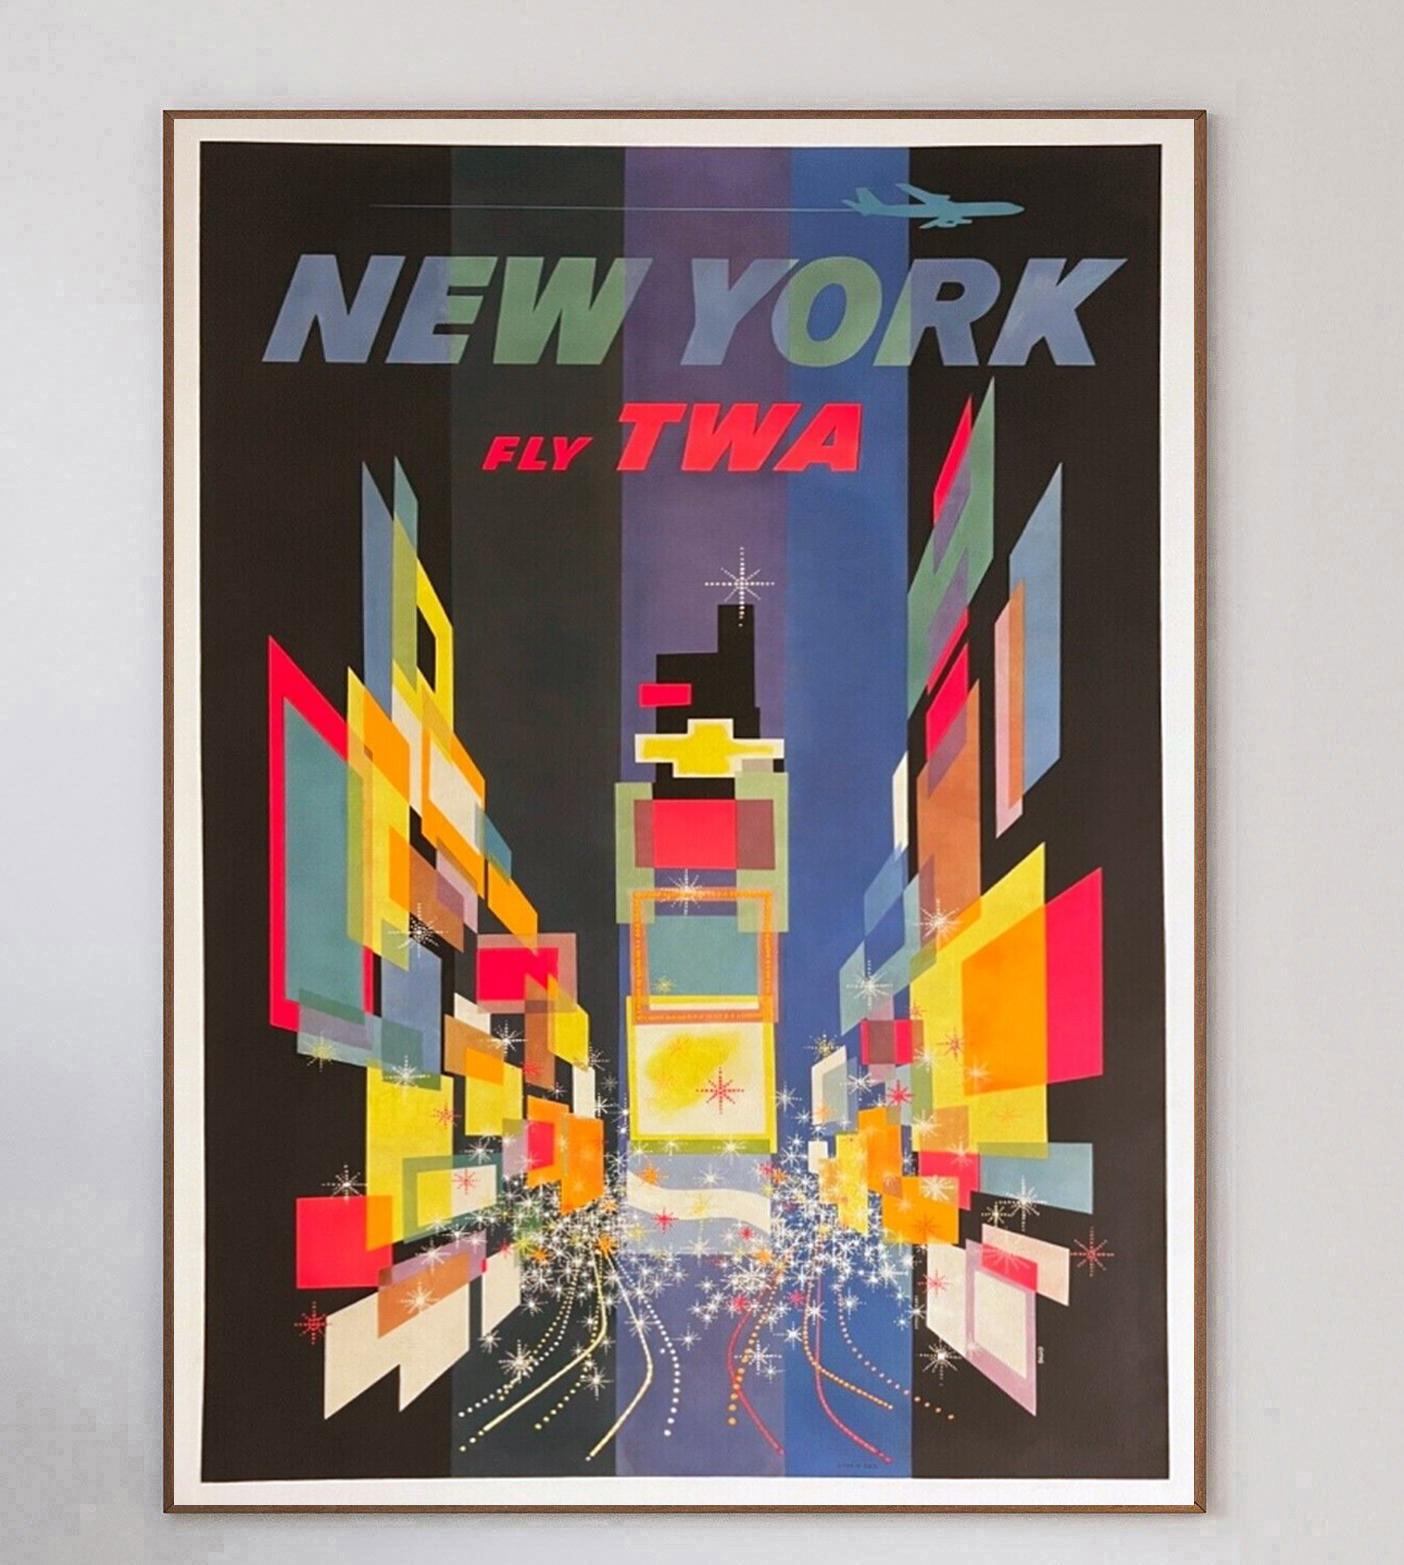 Cette affiche a été créée en 1960 pour la Trans World Airlines d'Howard Hughes afin de promouvoir ses liaisons avec New York. Illustré par l'influent artiste américain David Klein, ce dessin présente une image merveilleusement stylisée de Times